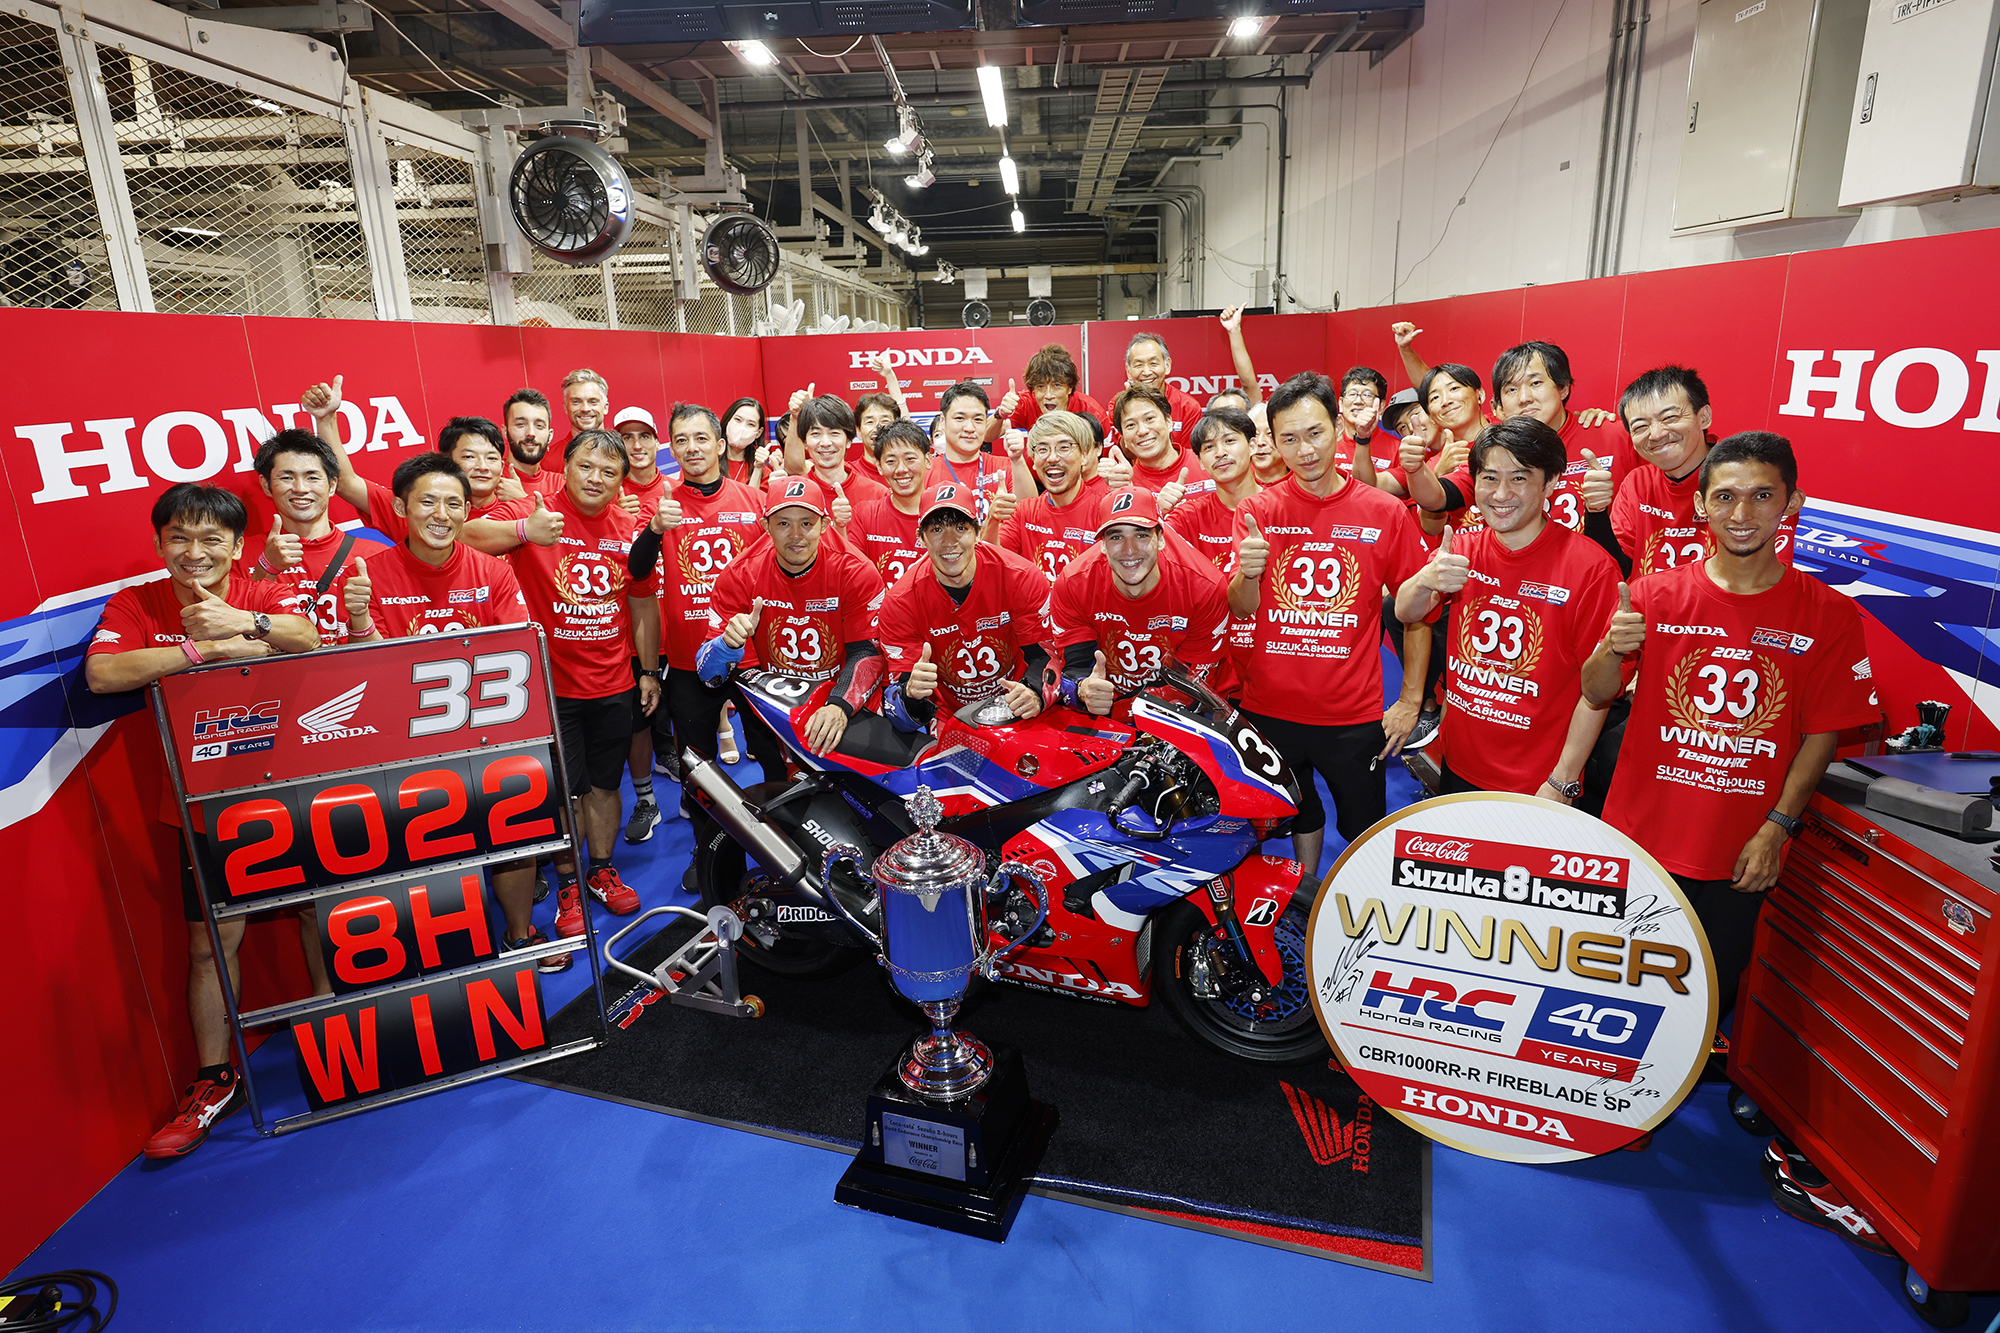 Honda Suzuka 8 Hours win